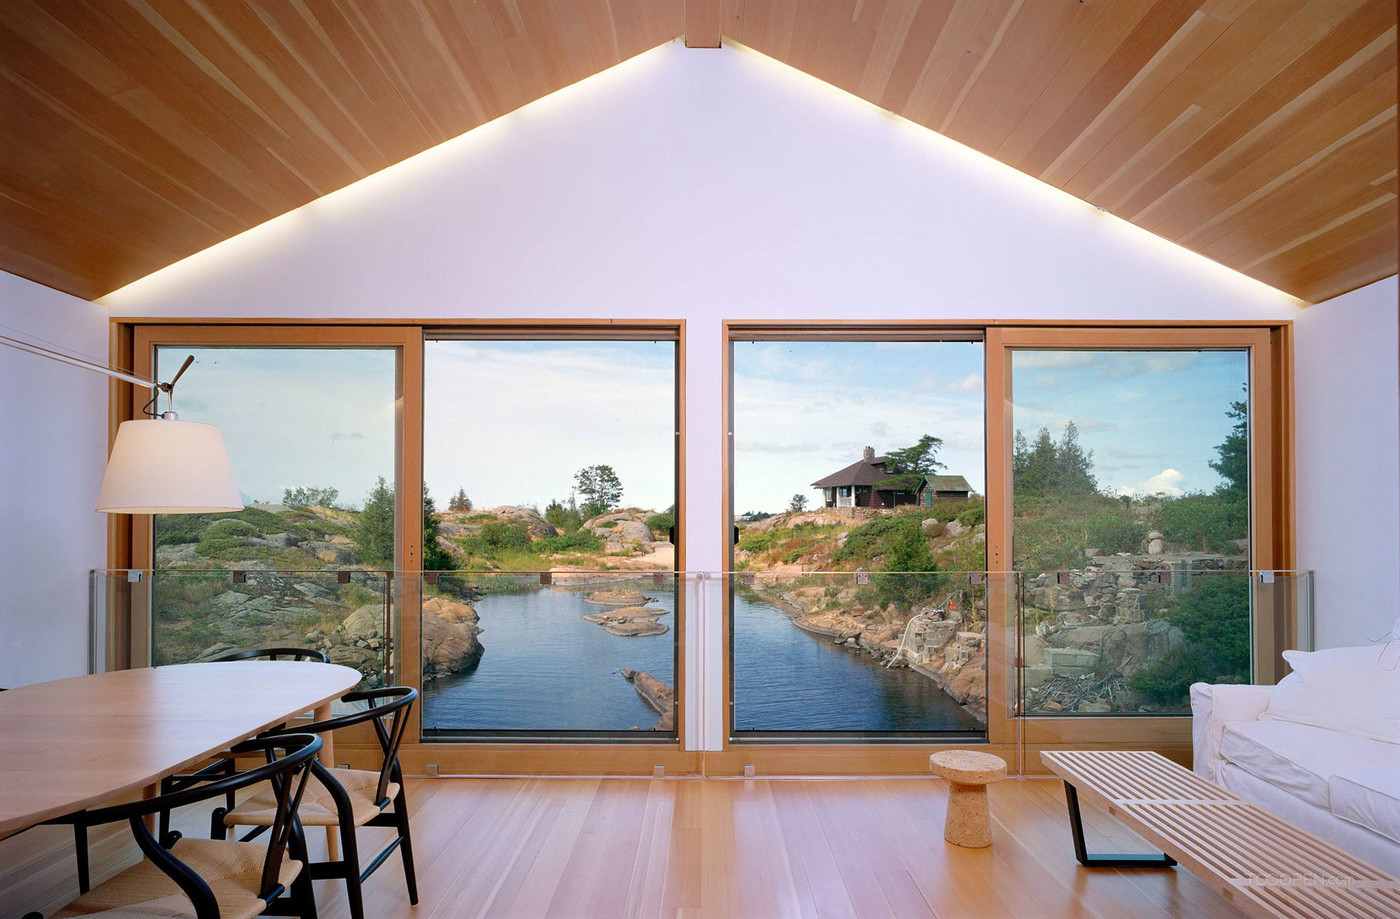 加拿大休伦湖漂浮木屋建筑设计作品-04